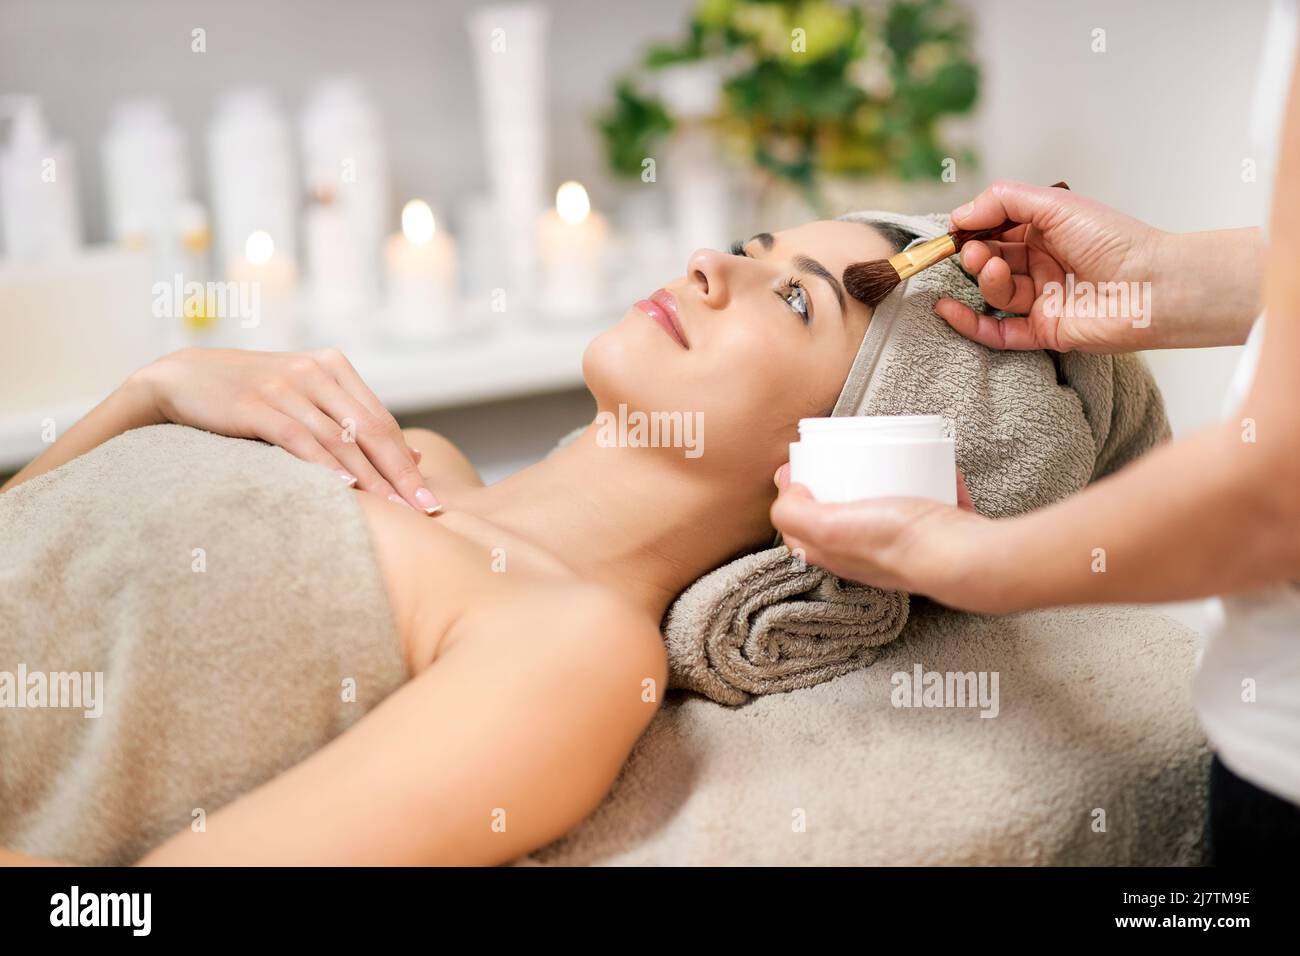 Crop cosmétique anonyme appliquant le produit cosmétique sur le visage de la cliente allongé sous une serviette pendant la procédure de beauté dans le salon de spa. Concept de maquillage. Banque D'Images